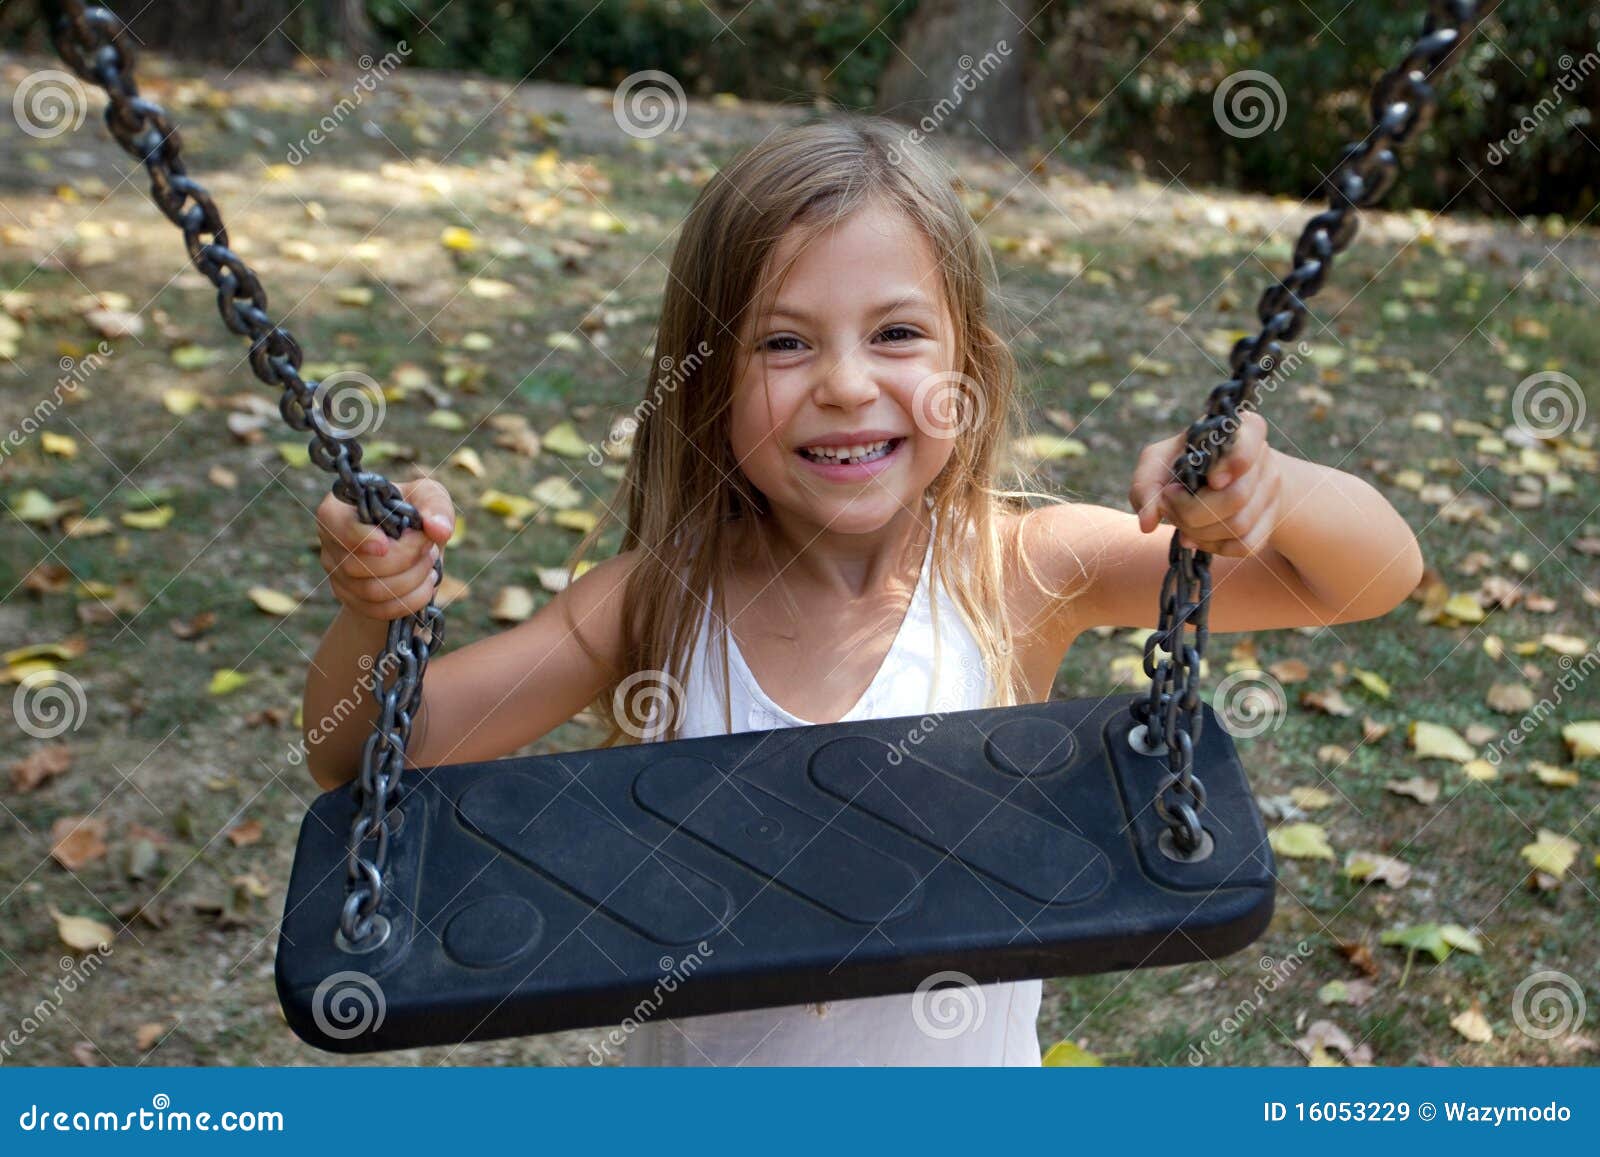 girl holding onto swing